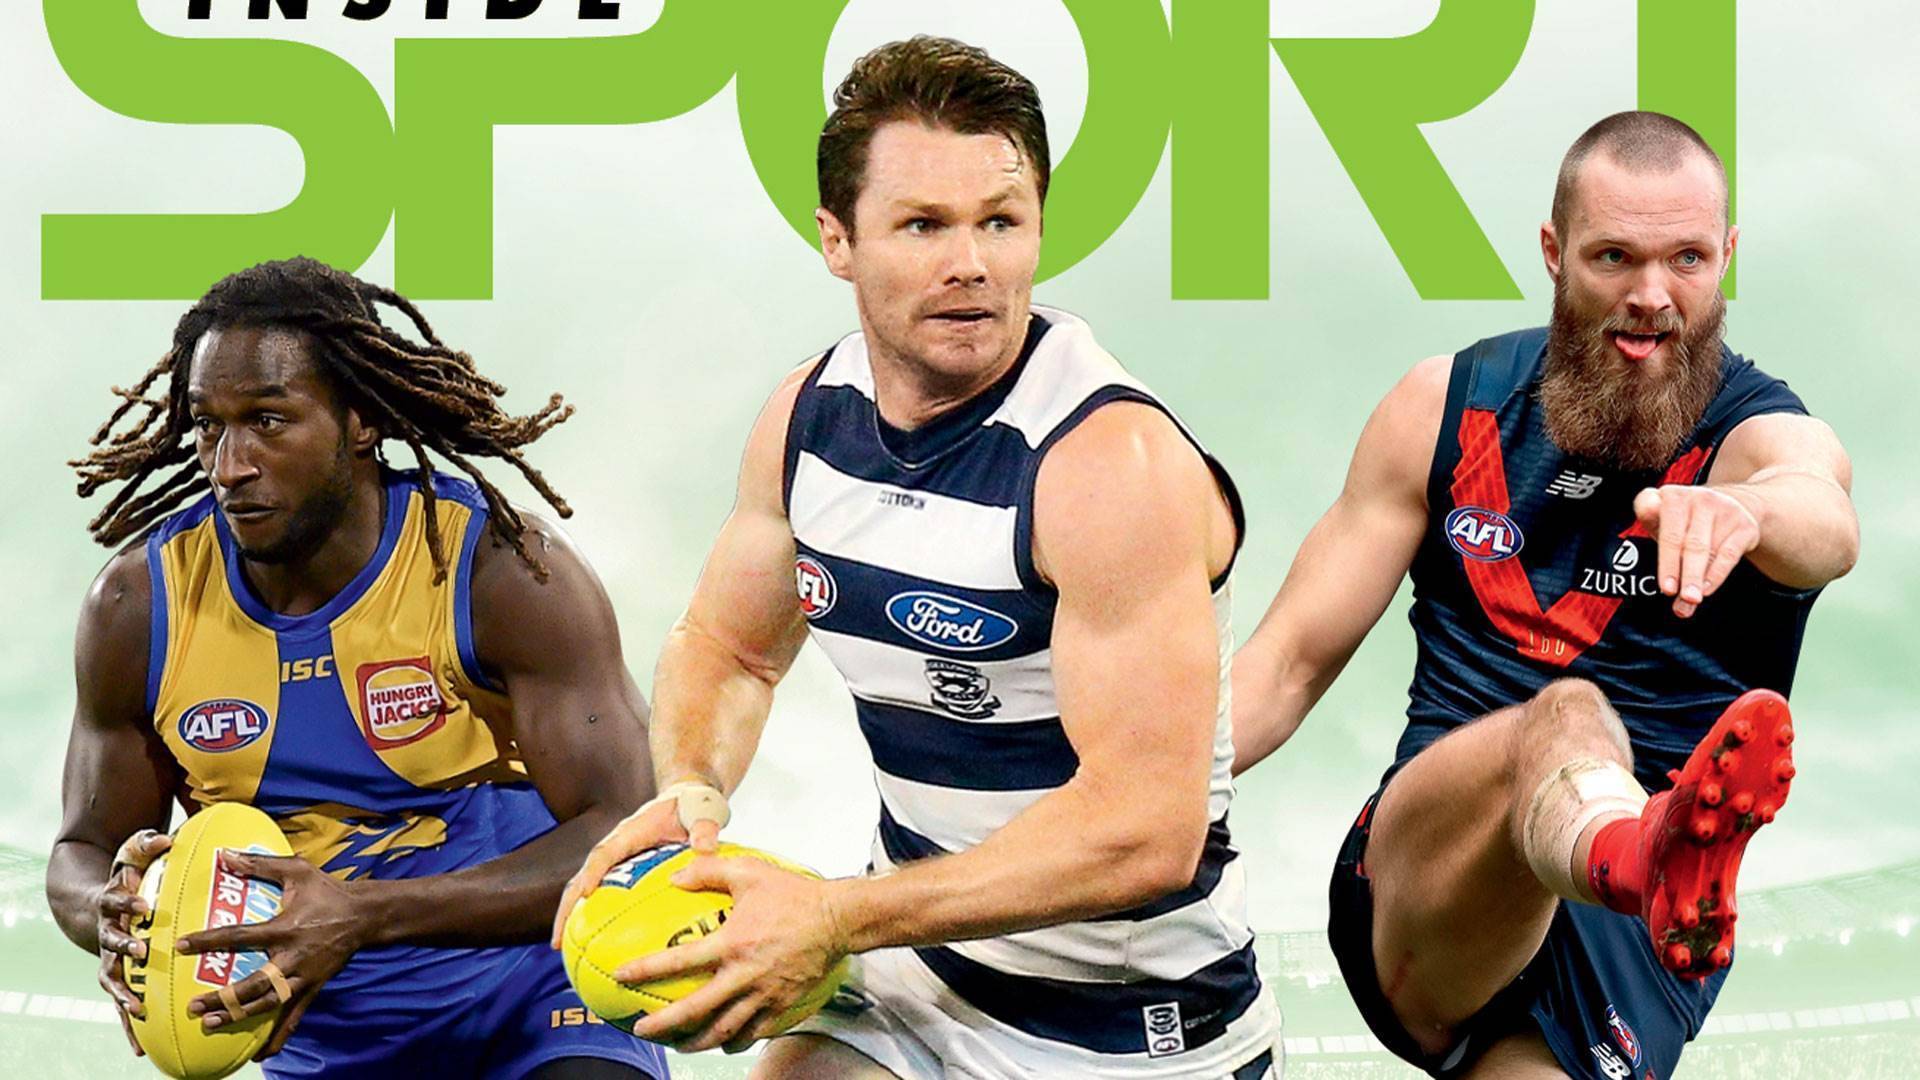 AFL HEROICS - ROUND 12 - More Sport - Inside Sport